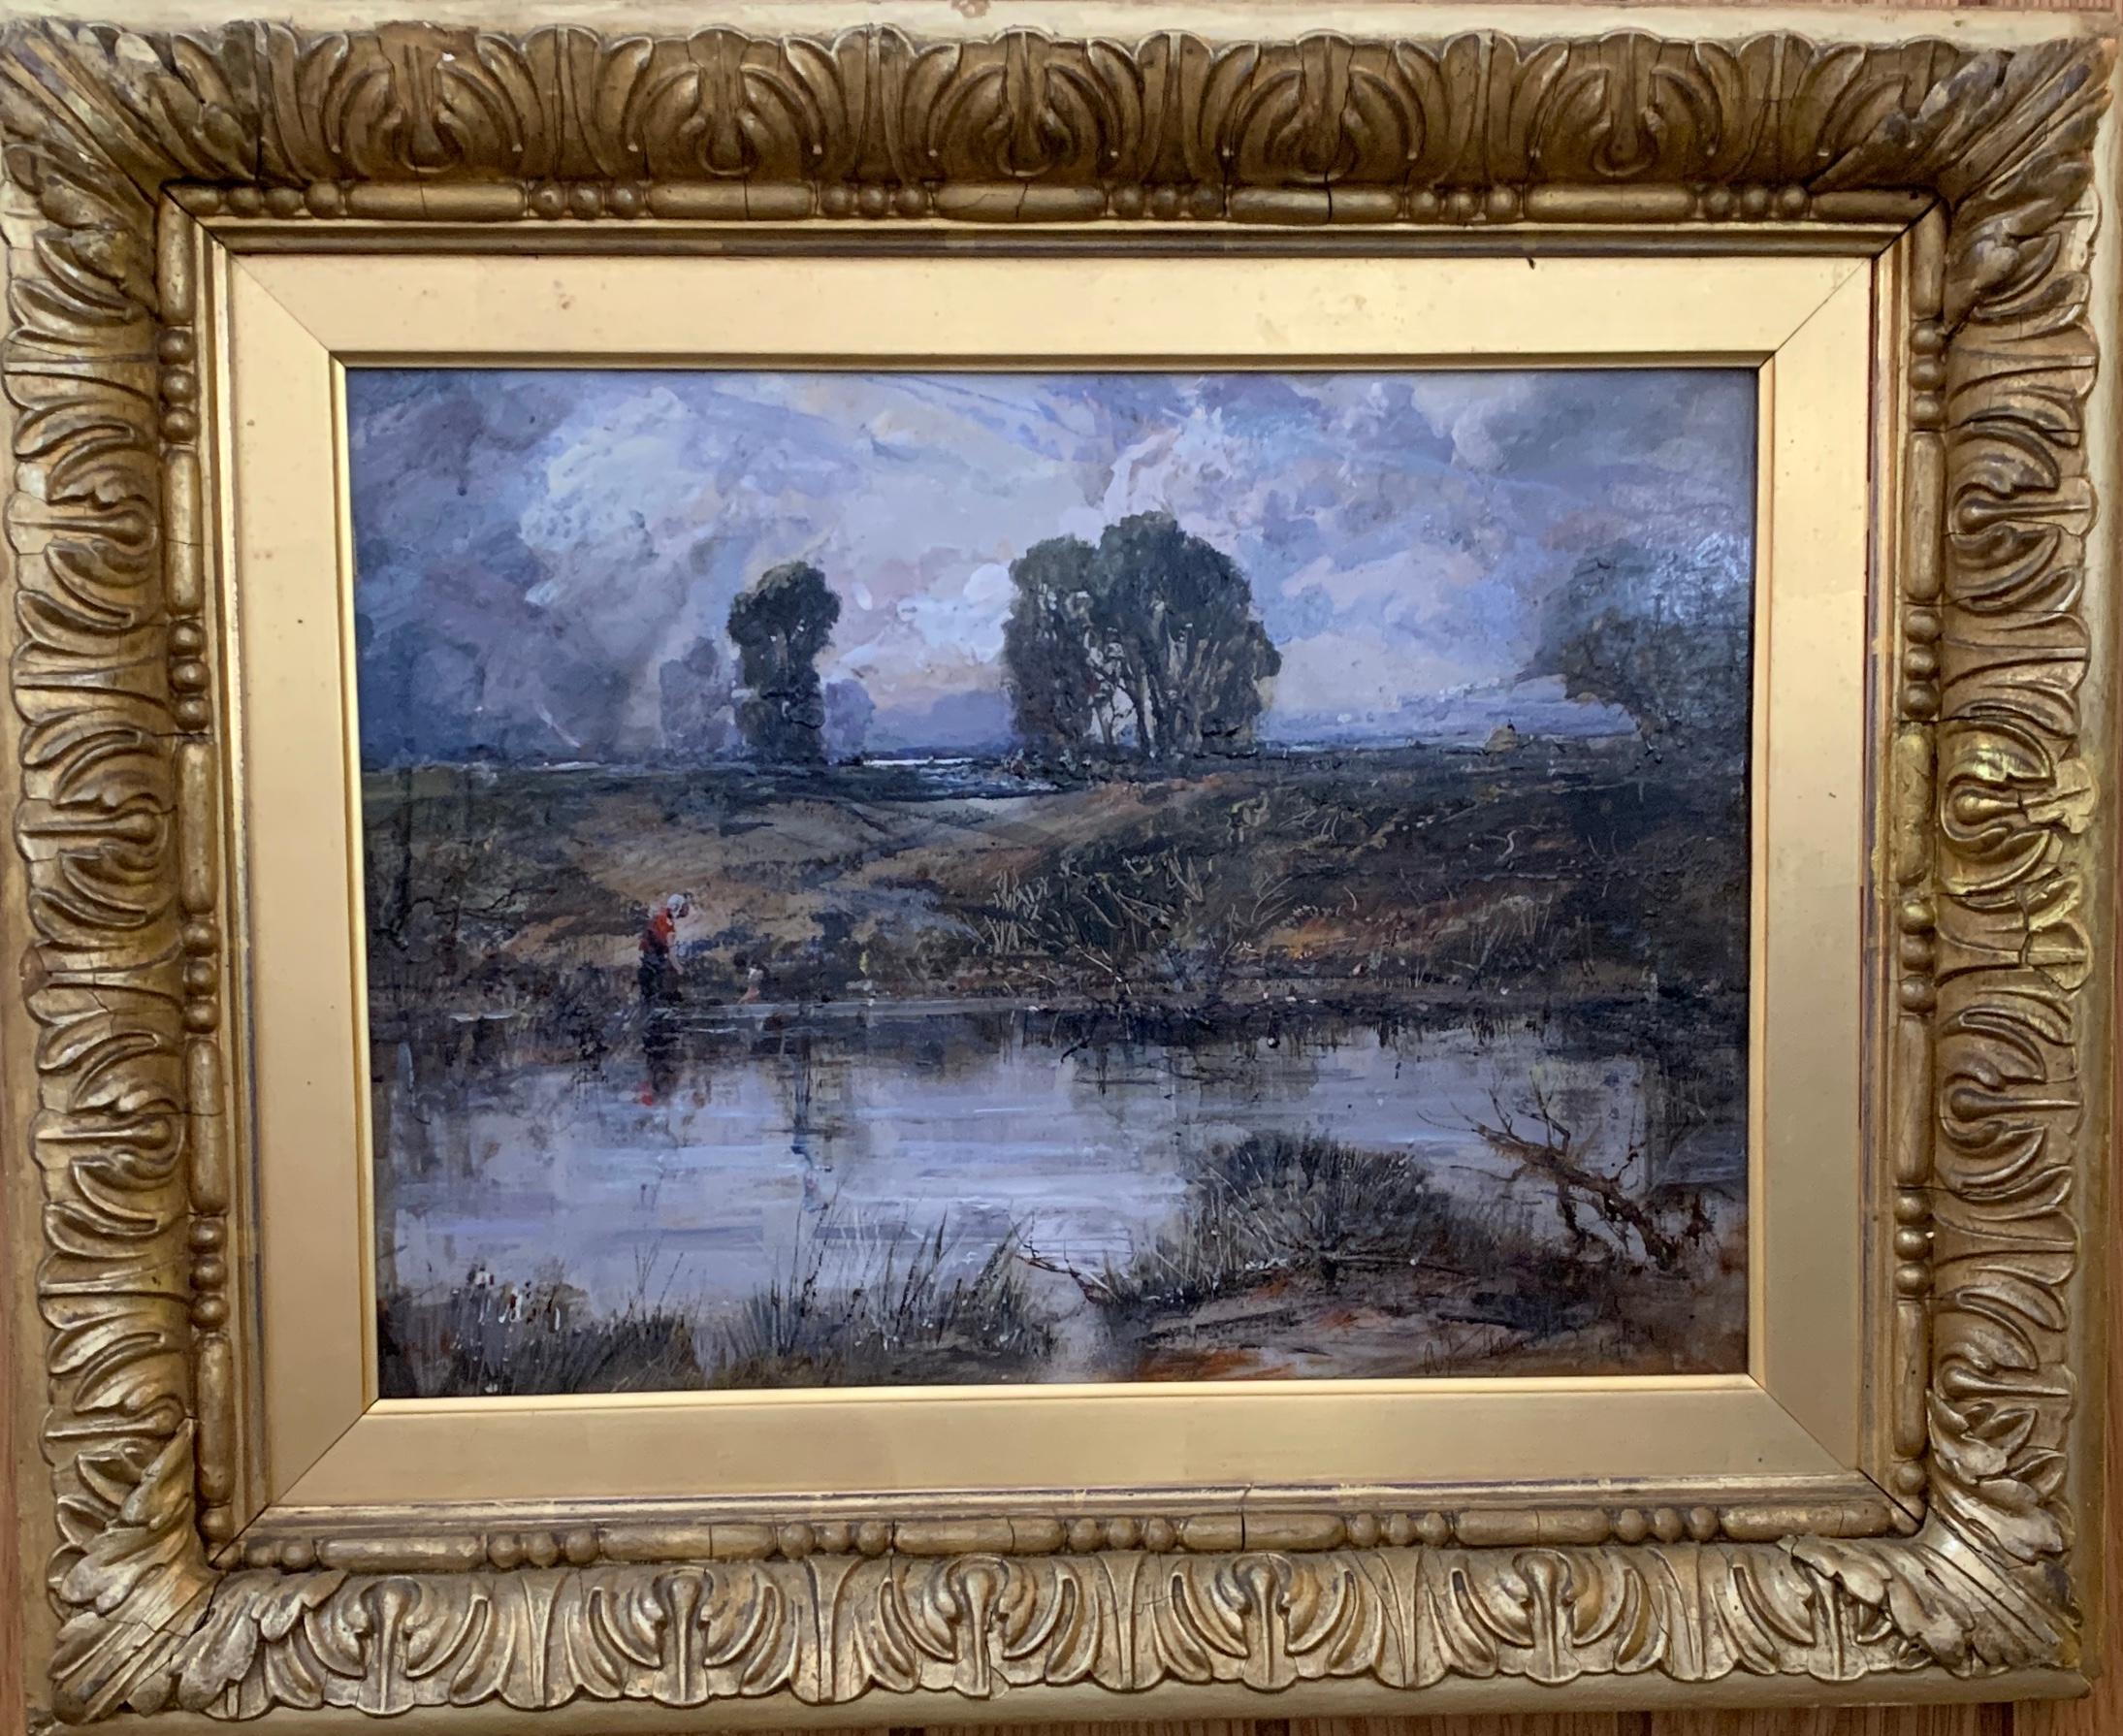 A Cloudy Day, English Impressionist River Landscape with figure and cottage (Un jour nuageux, paysage fluvial impressionniste anglais avec personnage et chalet)